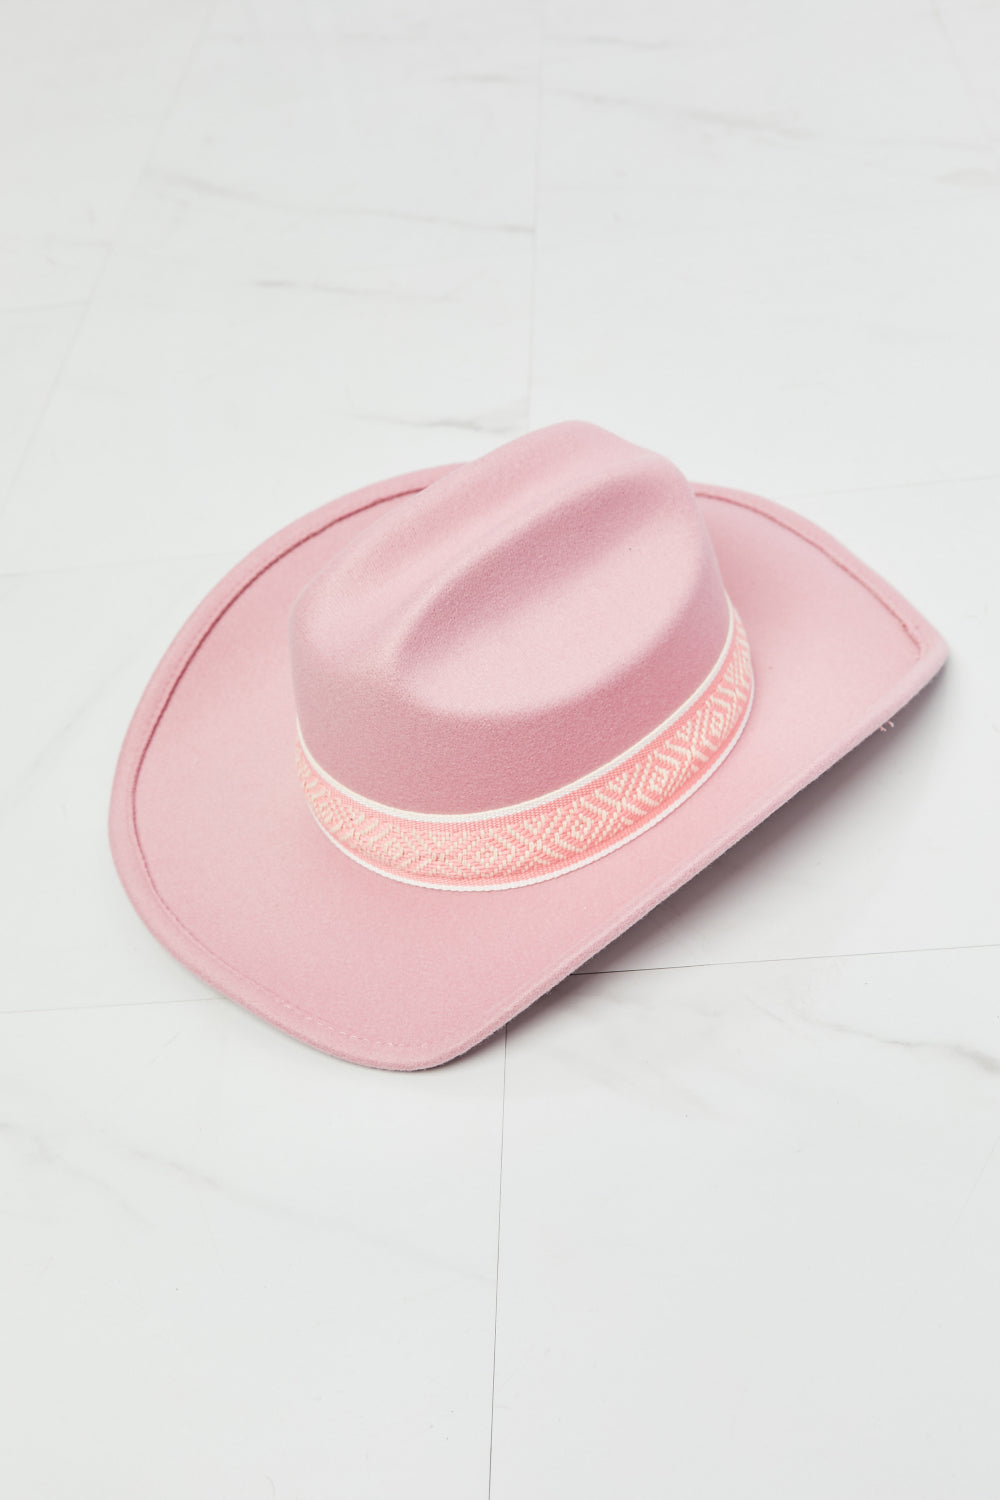 Fame Western Cutie Cowboy Hat in Pink - AllIn Computer